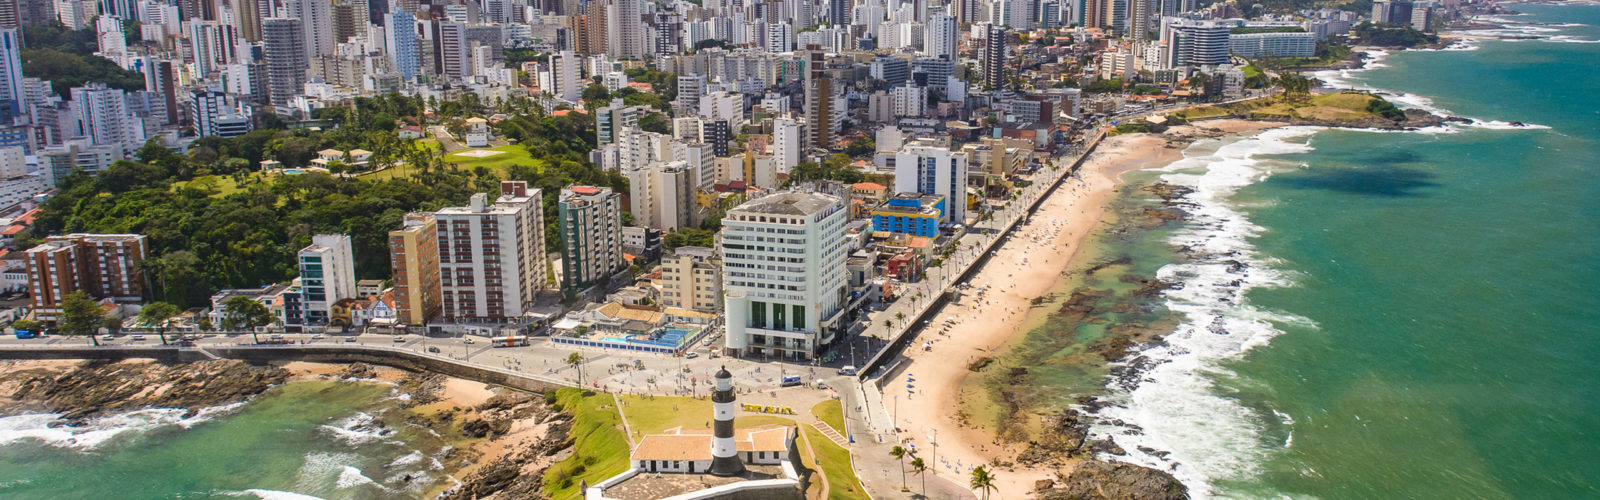 salvador-brazil-aerial-view